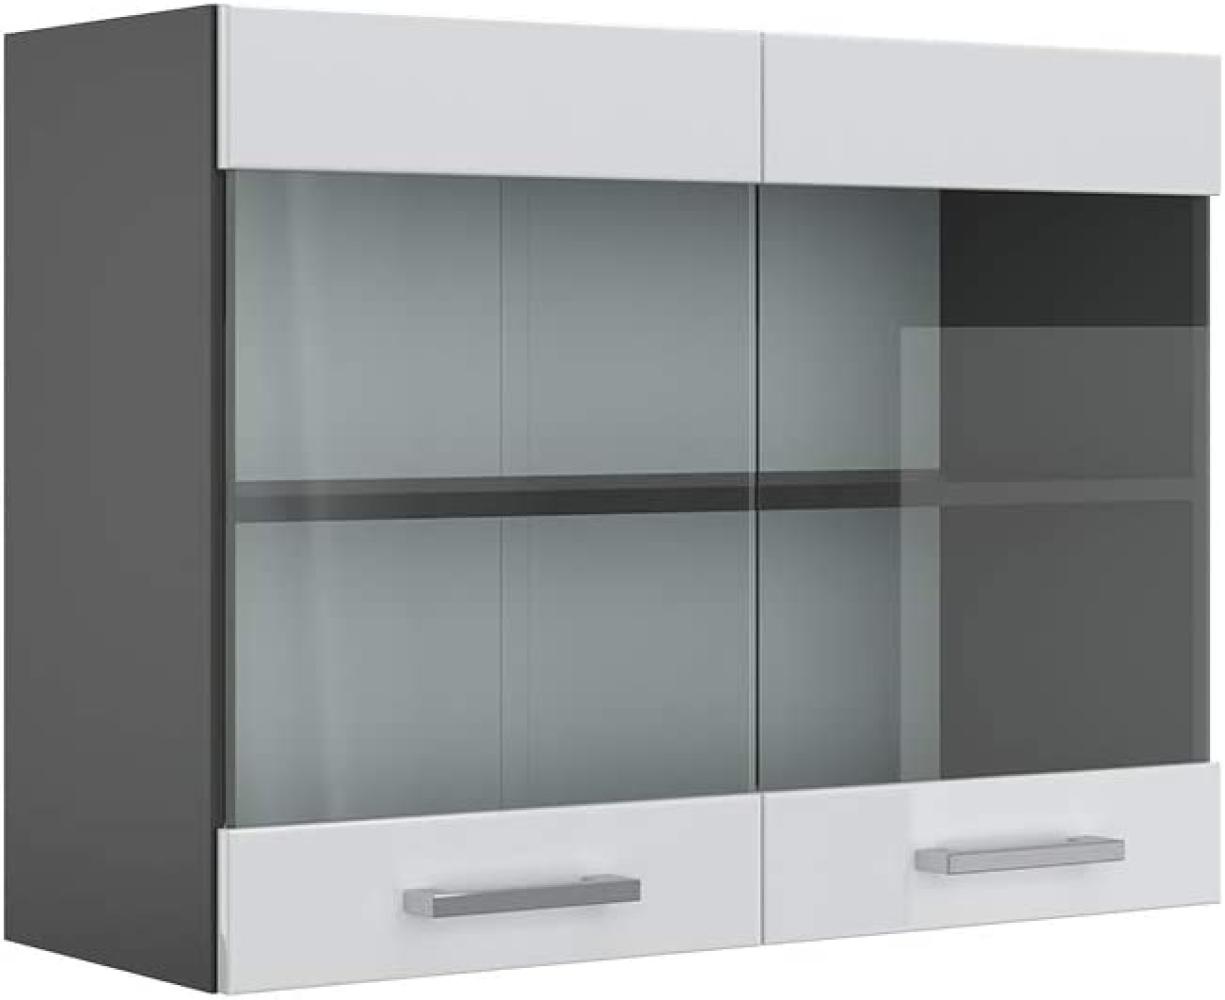 VICCO Küchenschrank R-Line Hängeschrank Unterschrank Küchenzeile Küchenunterschran Anthrazit (Weiß Hochglanz, Hängeglasschrank 80cm) Bild 1